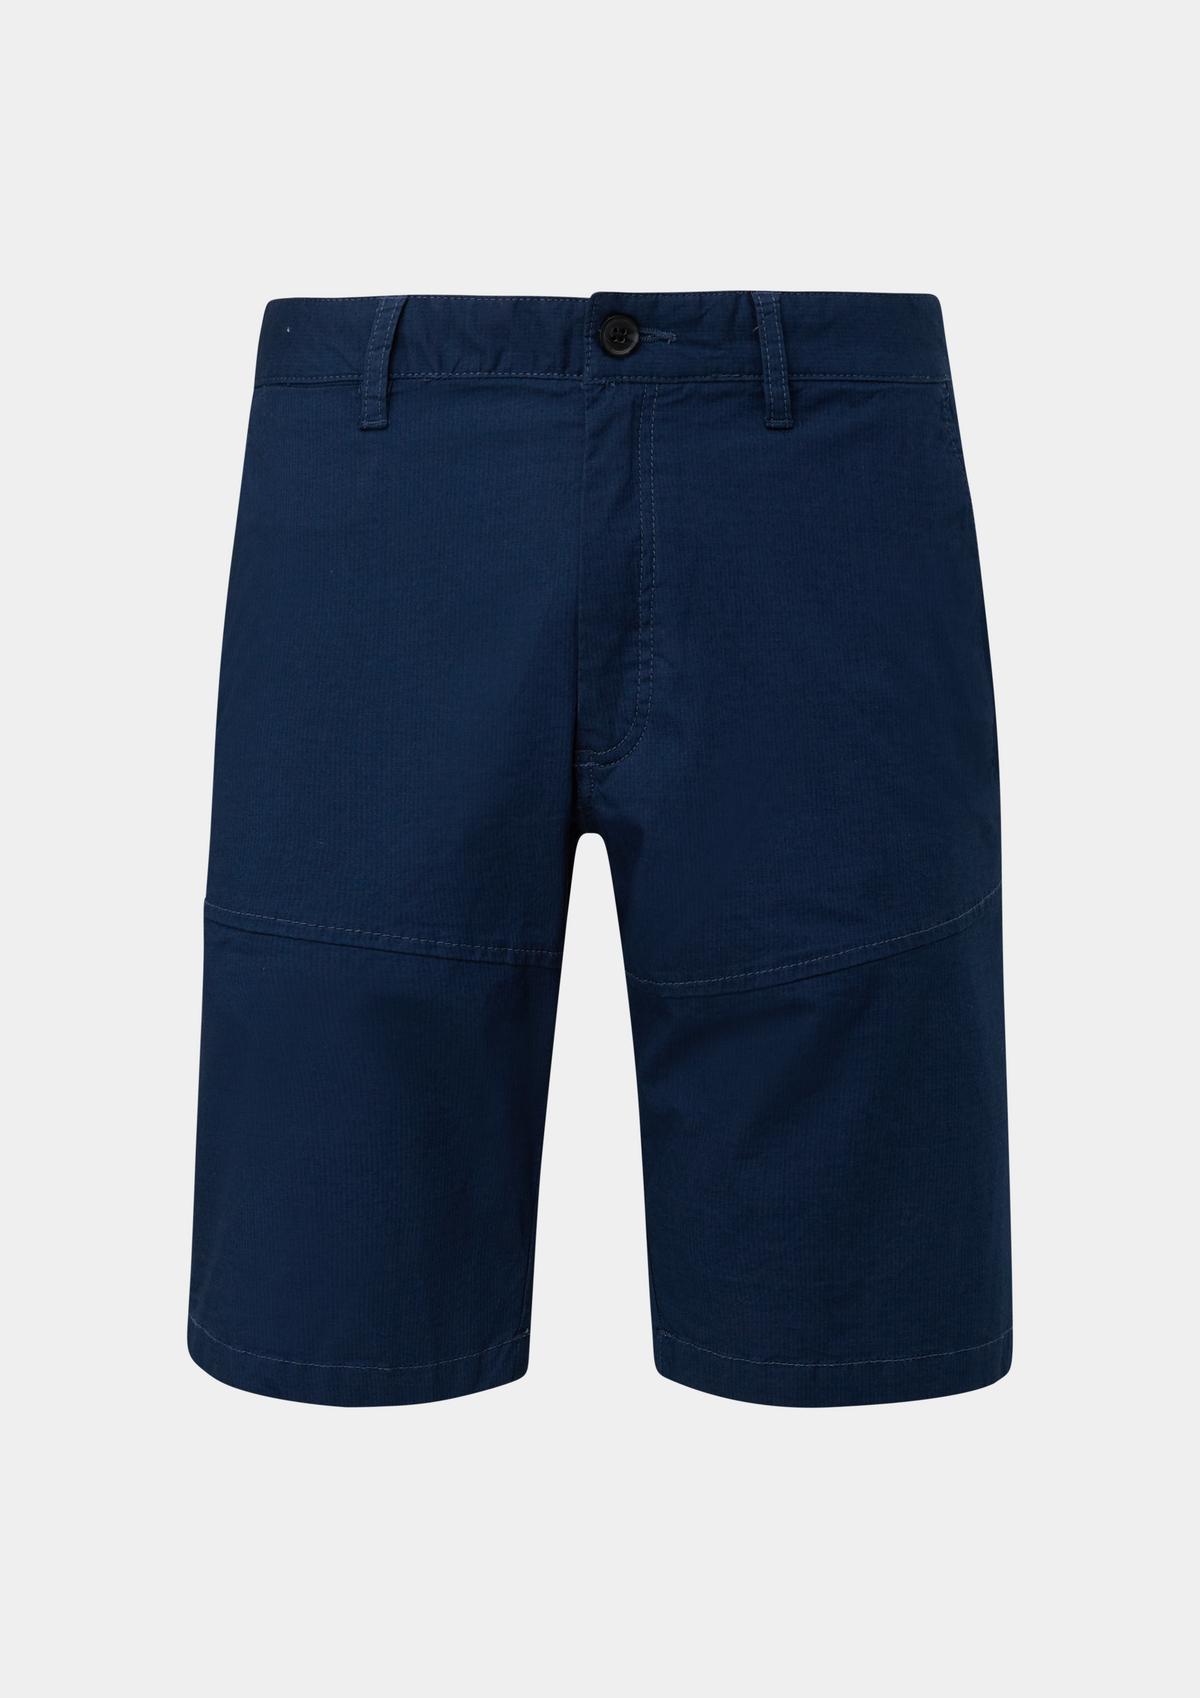 Plain Shorts for Men